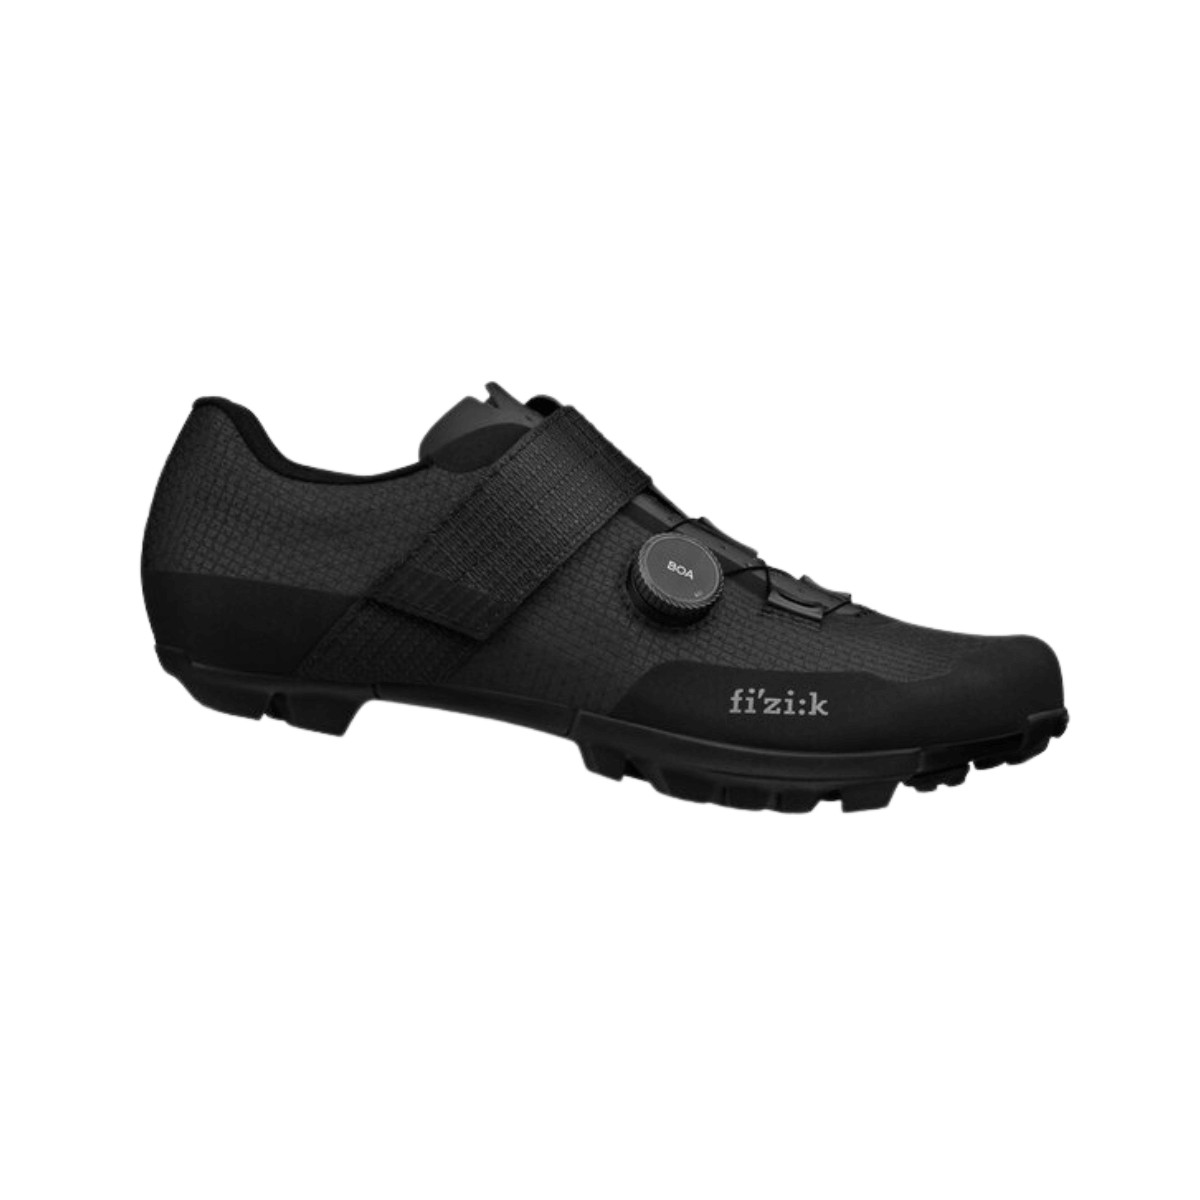 Chaussures Fizik Vento Ferox Carbon Noir, Taille 41 - EUR